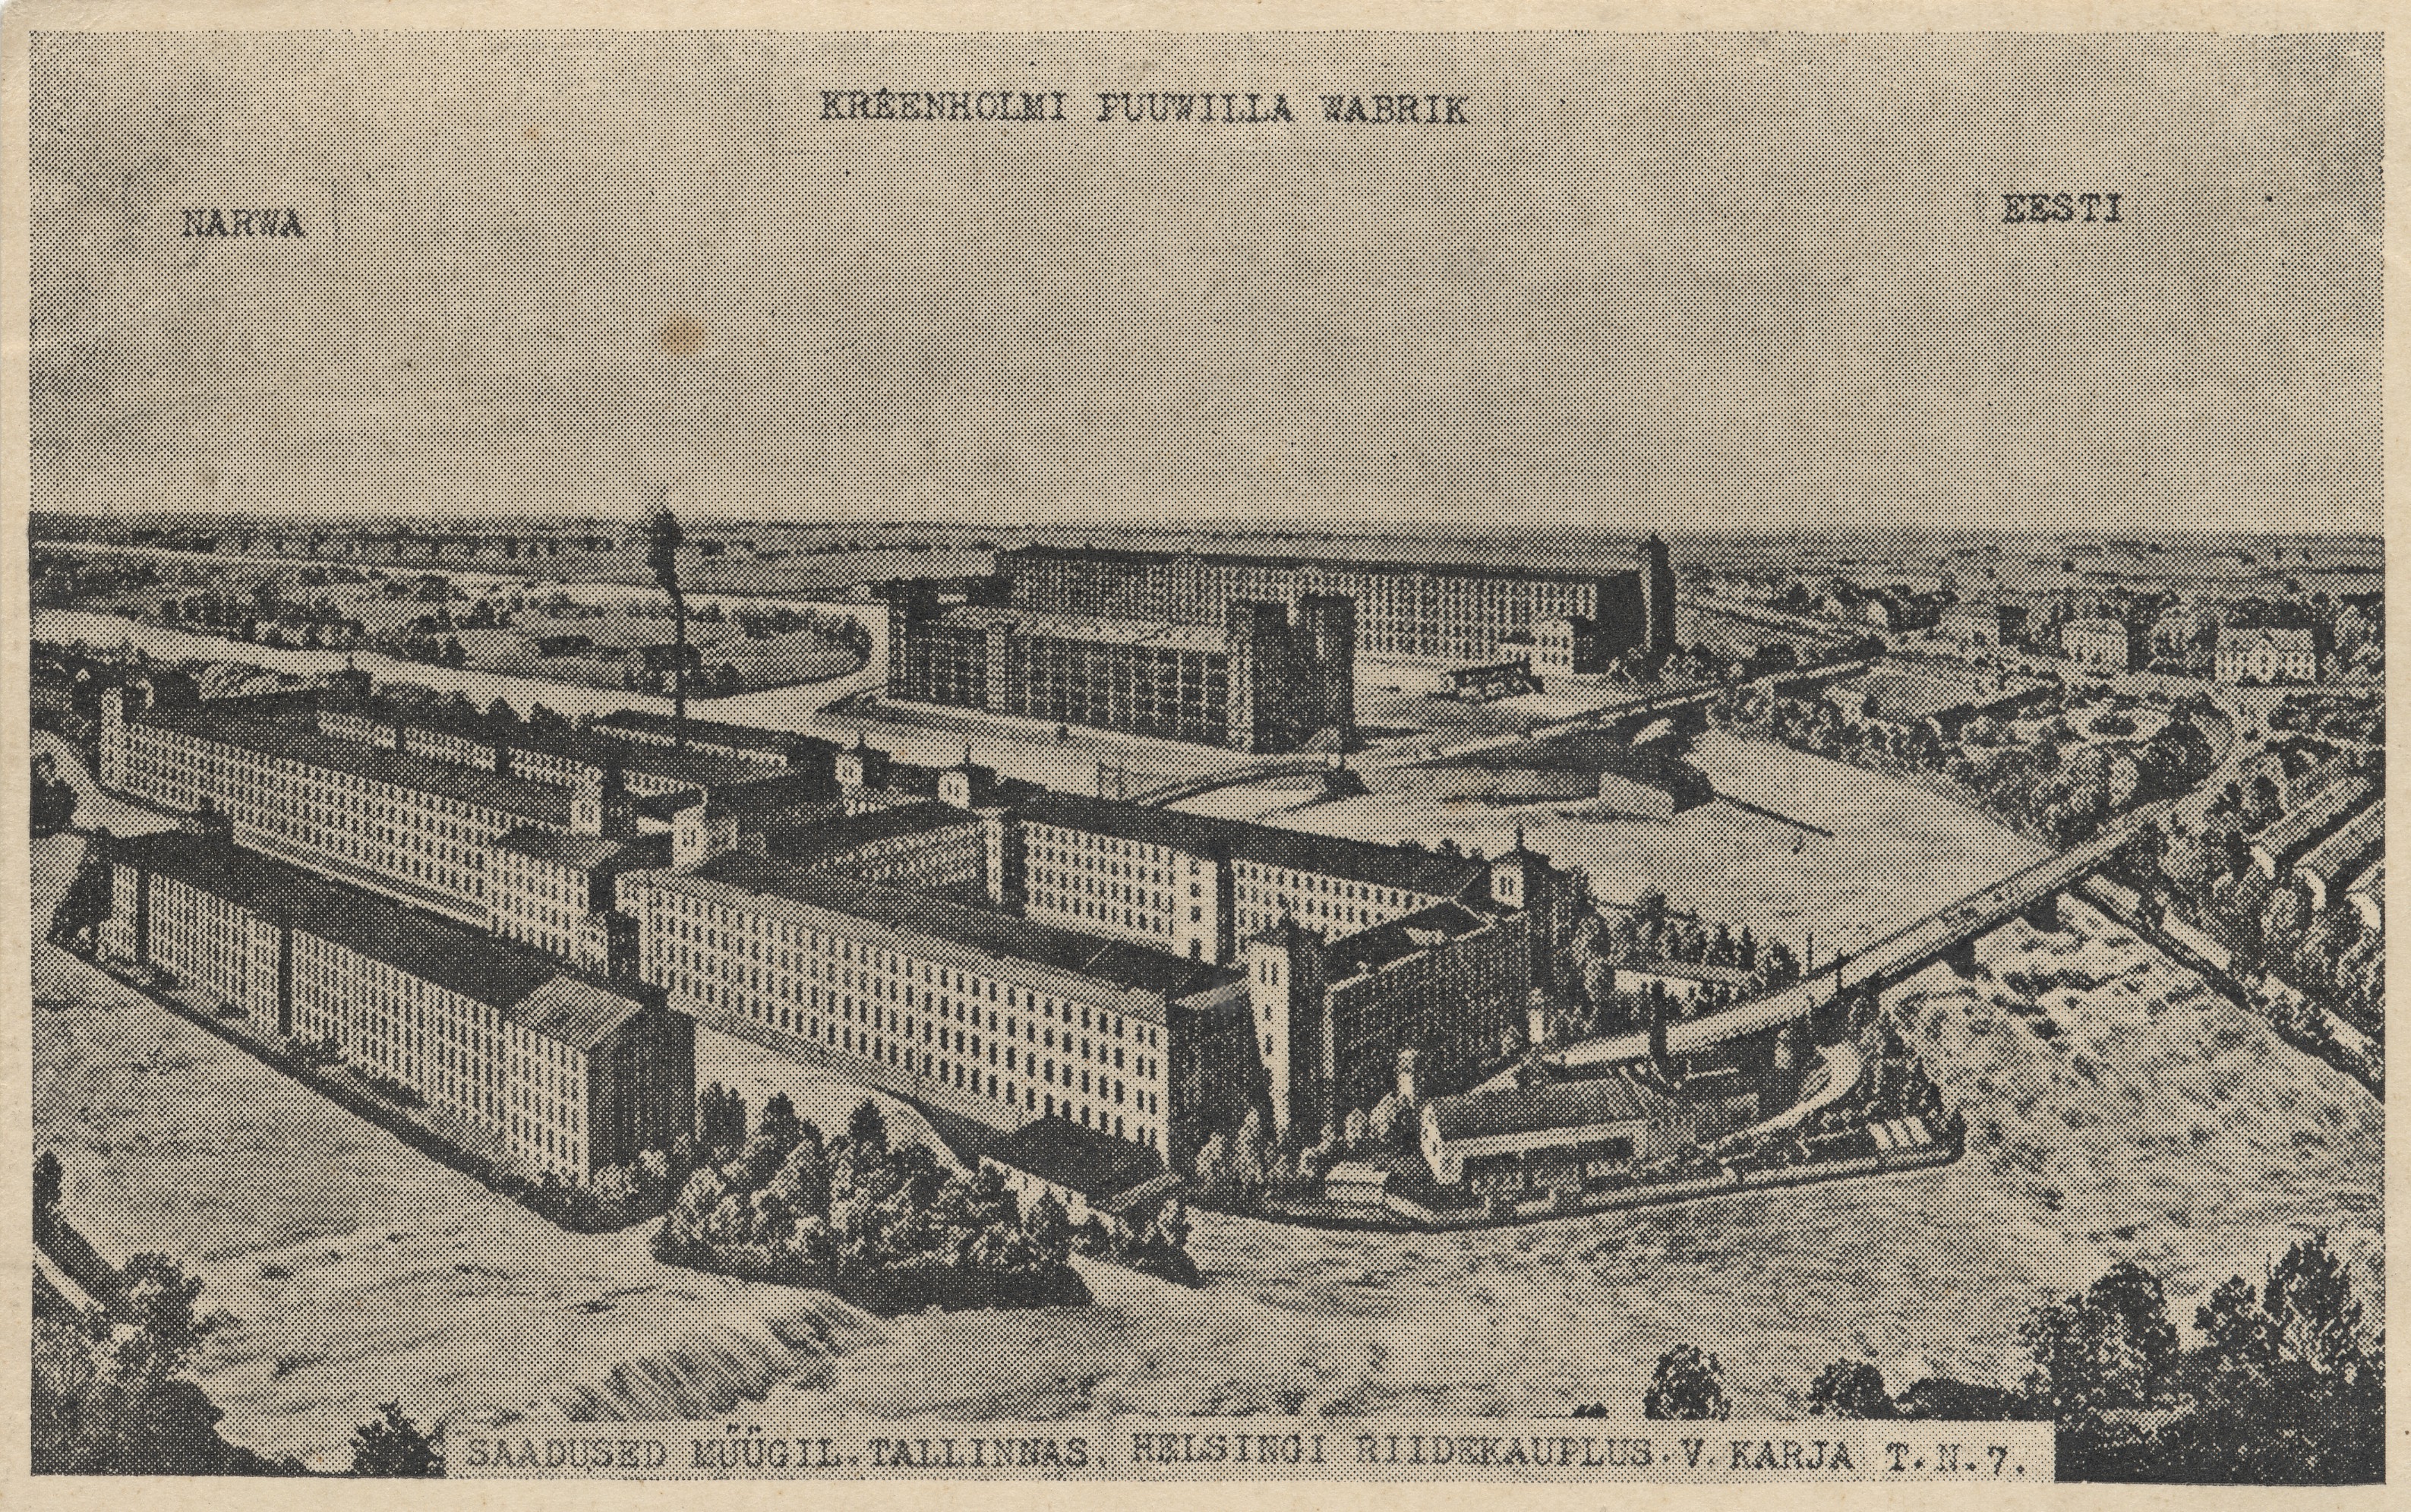 Narwa Kreenholm woodwilla wabrik : Estonia